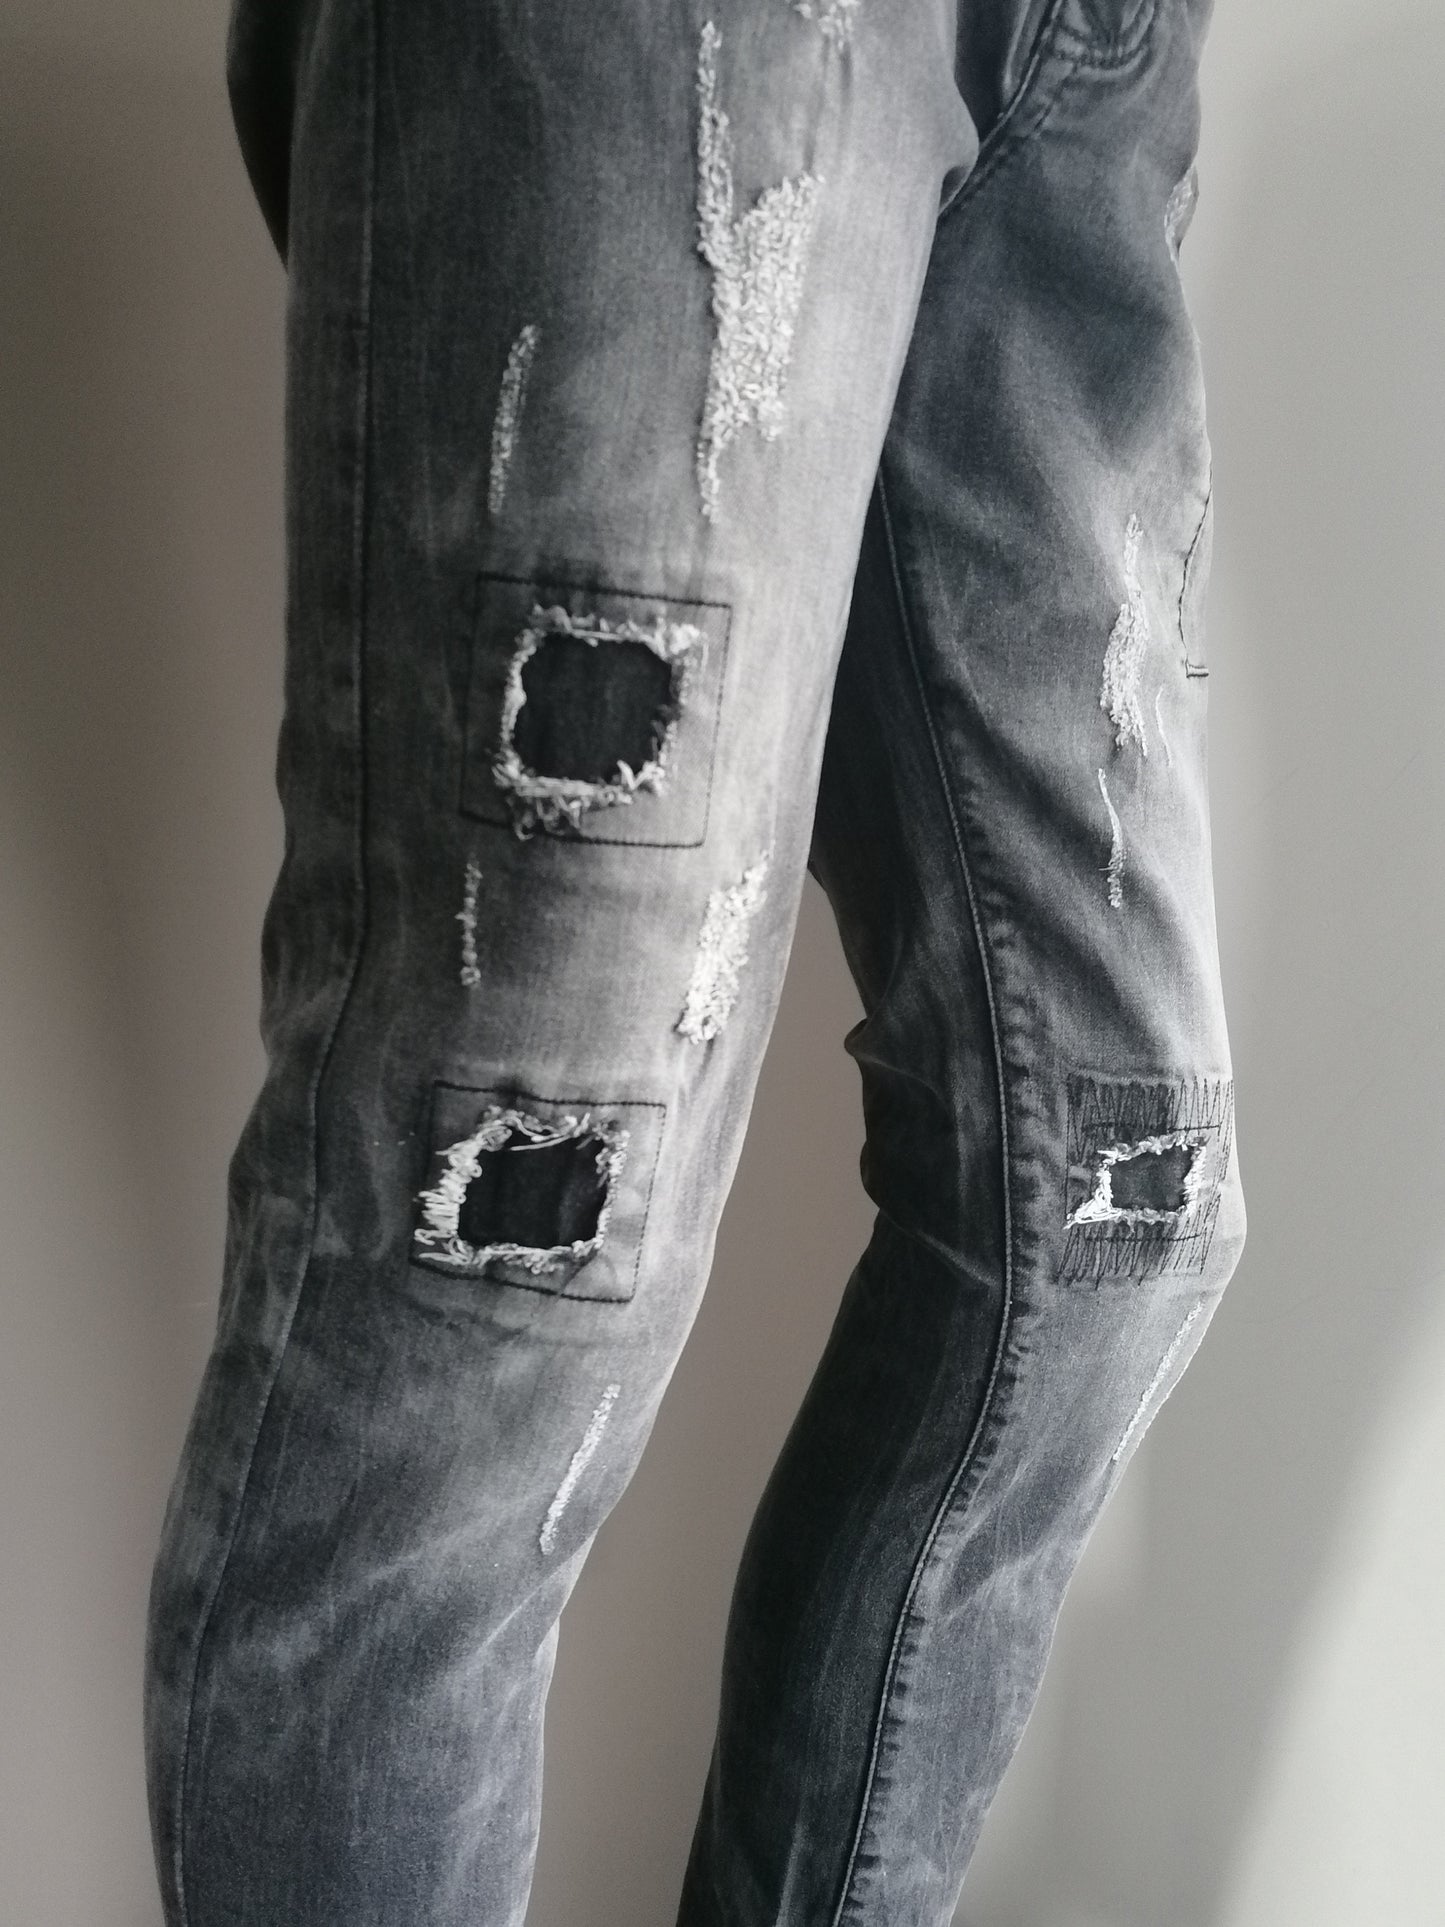 Justierende Jeans. Farbig schwarz. Größe W34 - L32. strecken